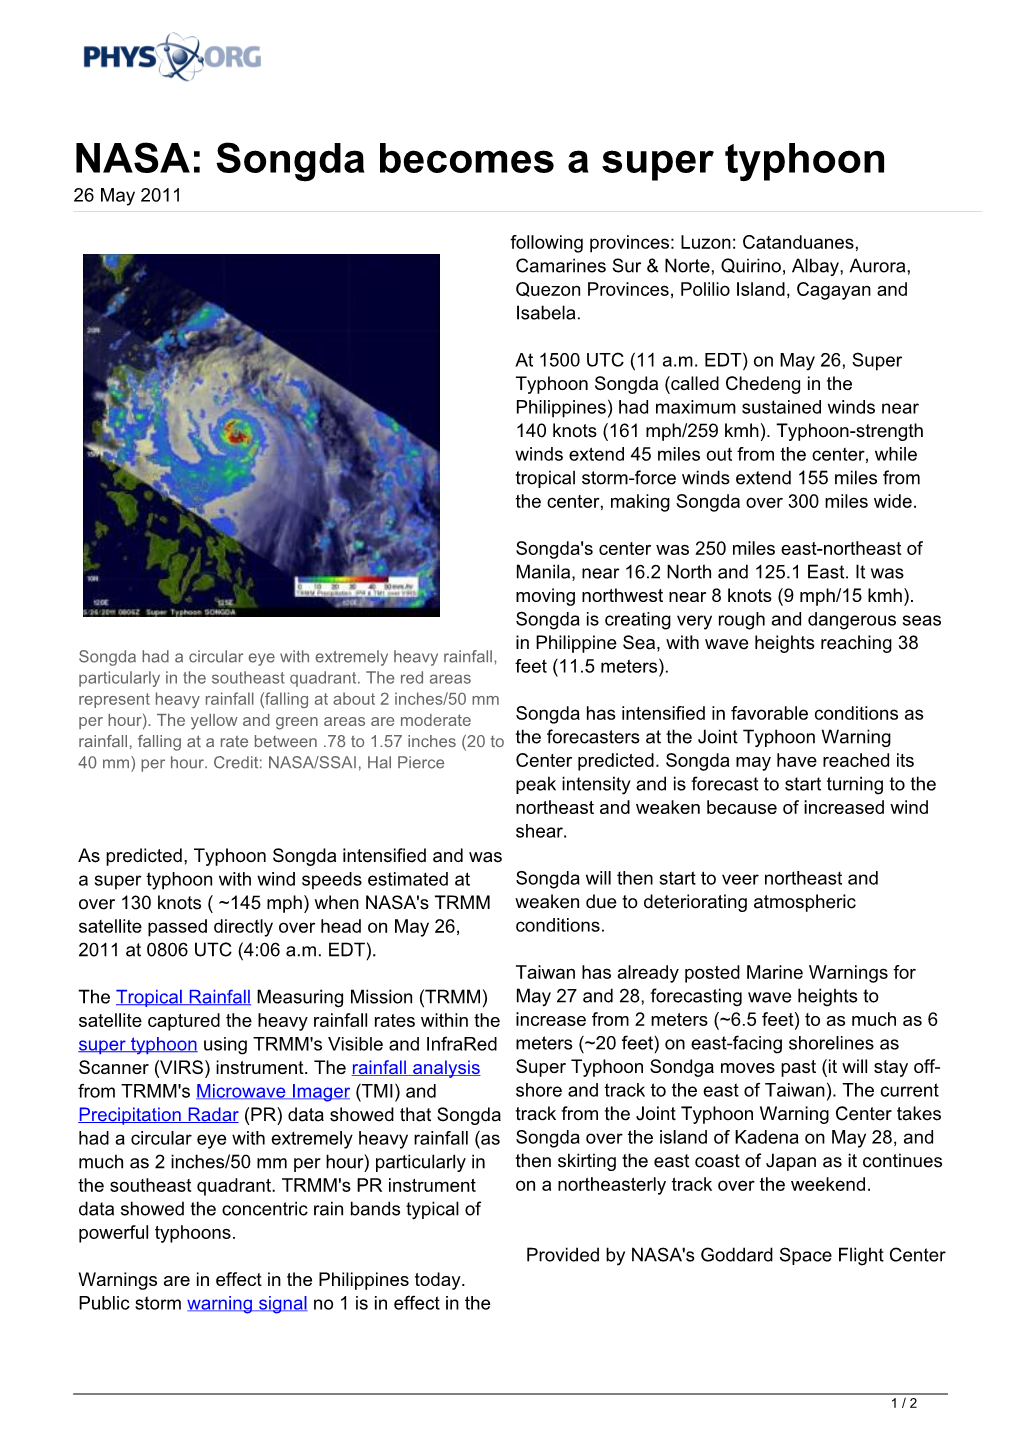 NASA: Songda Becomes a Super Typhoon 26 May 2011